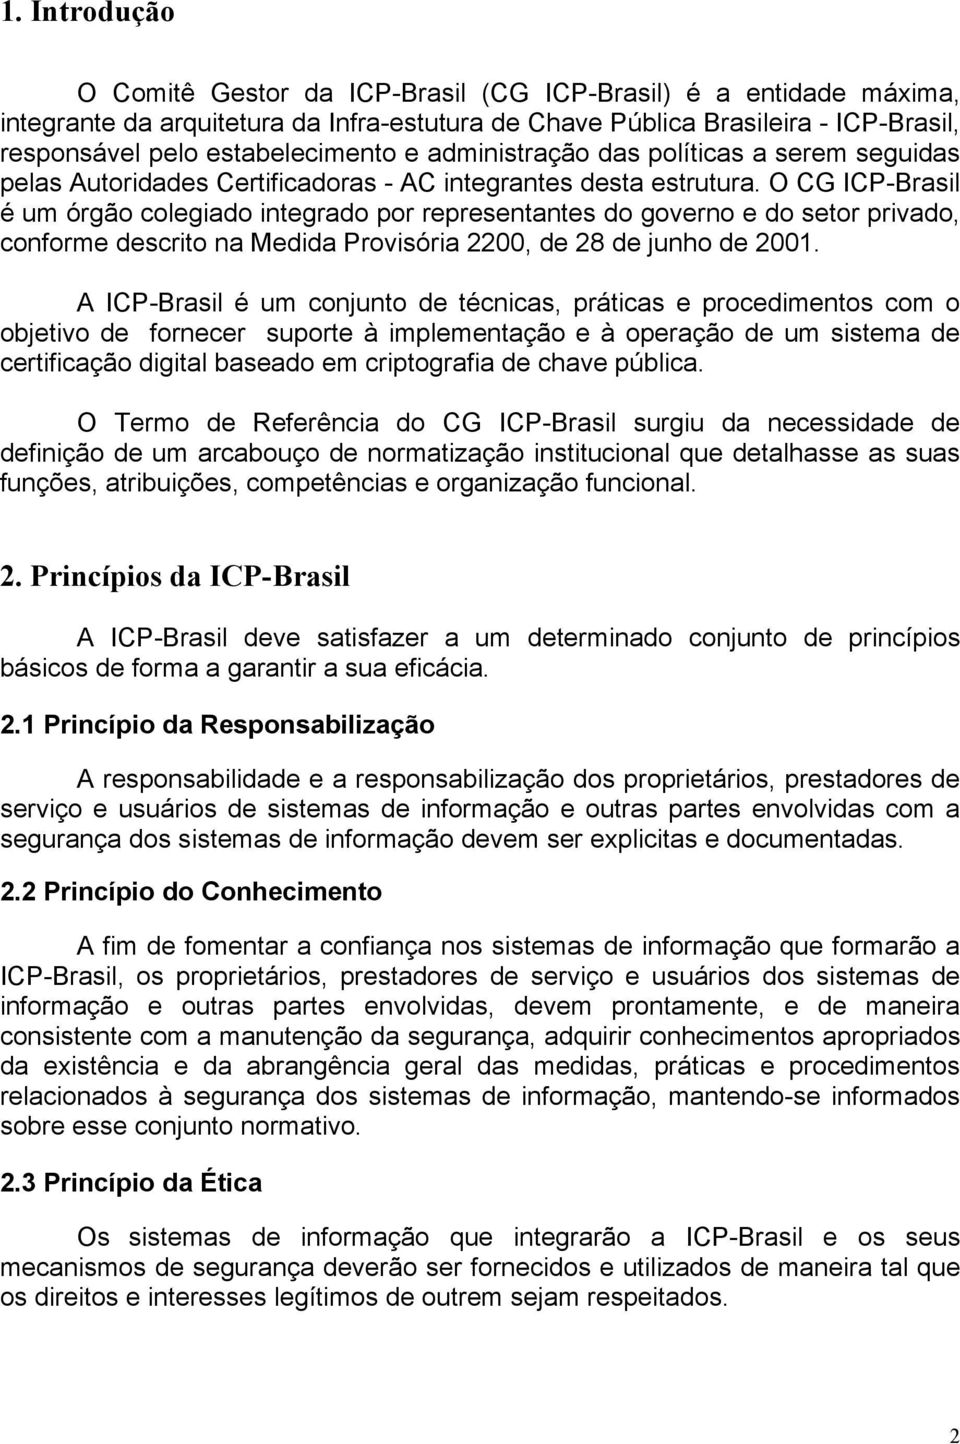 O CG ICP-Brasil é um órgão colegiado integrado por representantes do governo e do setor privado, conforme descrito na Medida Provisória 2200, de 28 de junho de 2001.